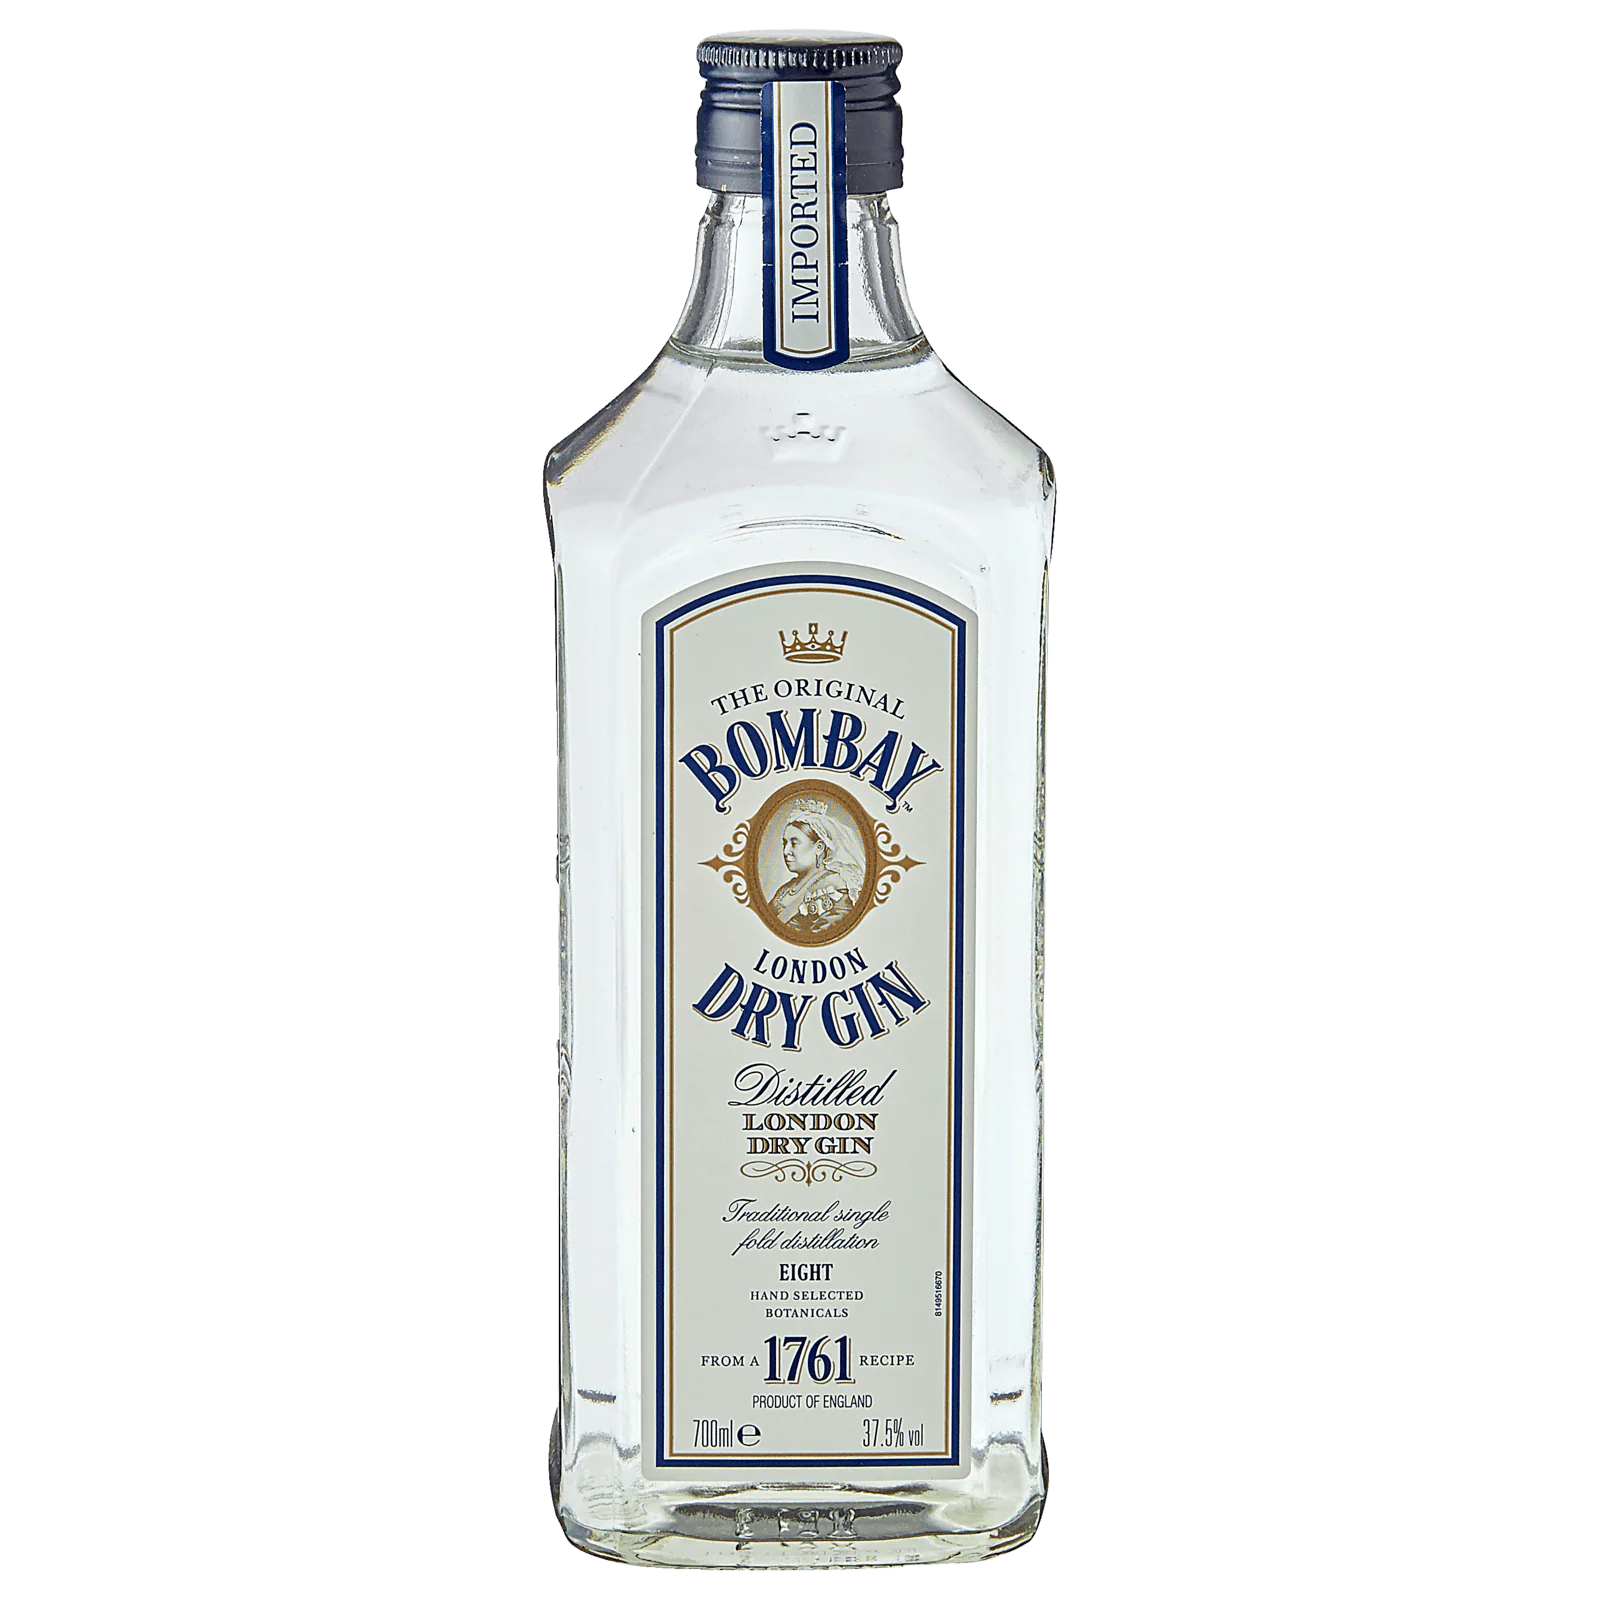 Shiva Oriental Spiced London Dry Gin 40% Vol für 9,99€ von Lidl | Gin